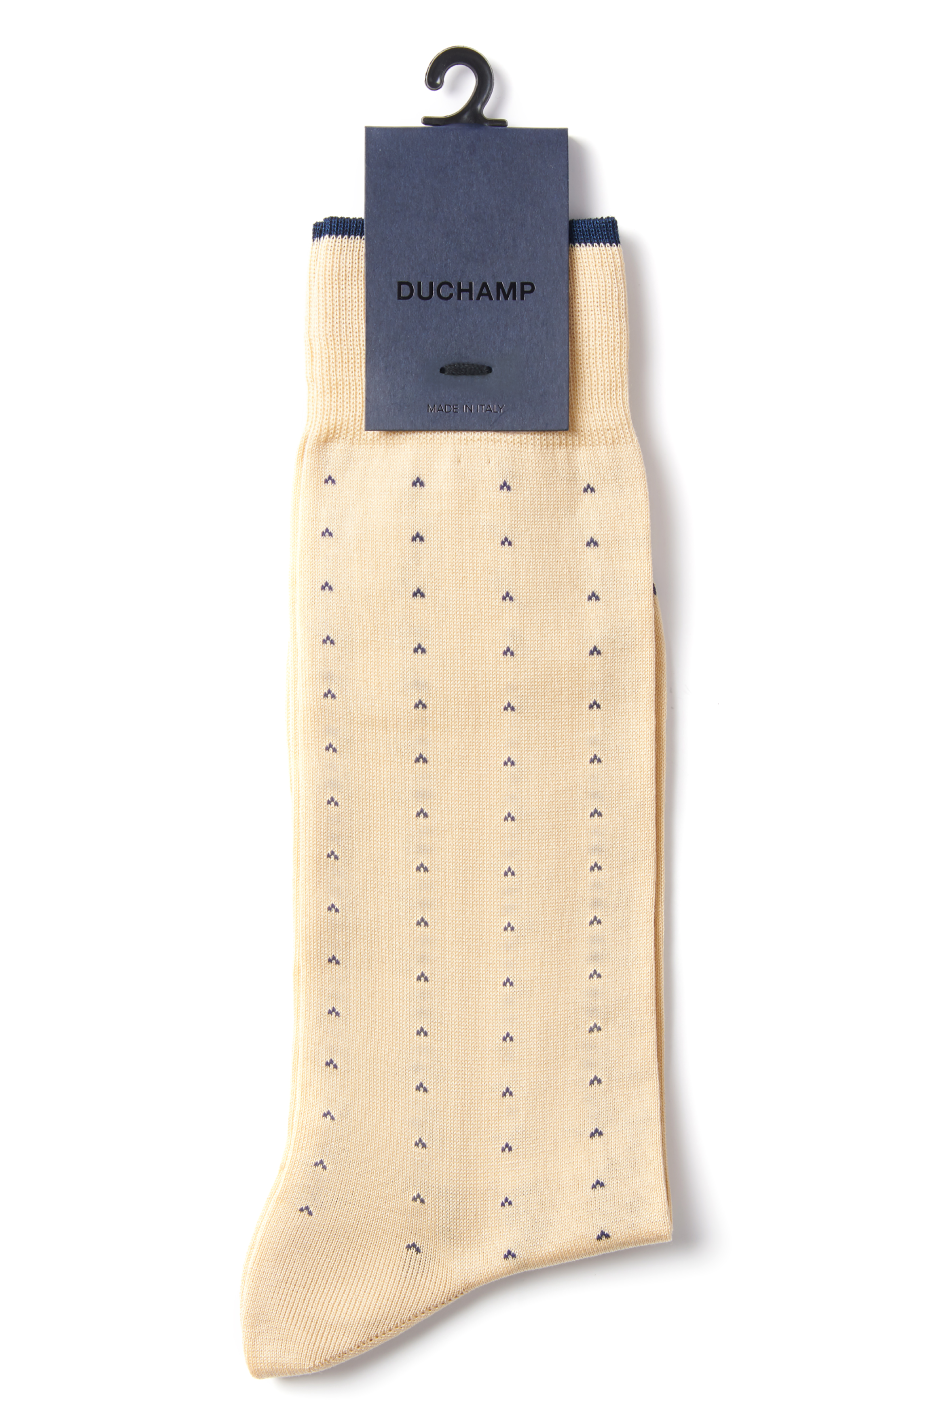 Duchamp Men's Dotted Sock